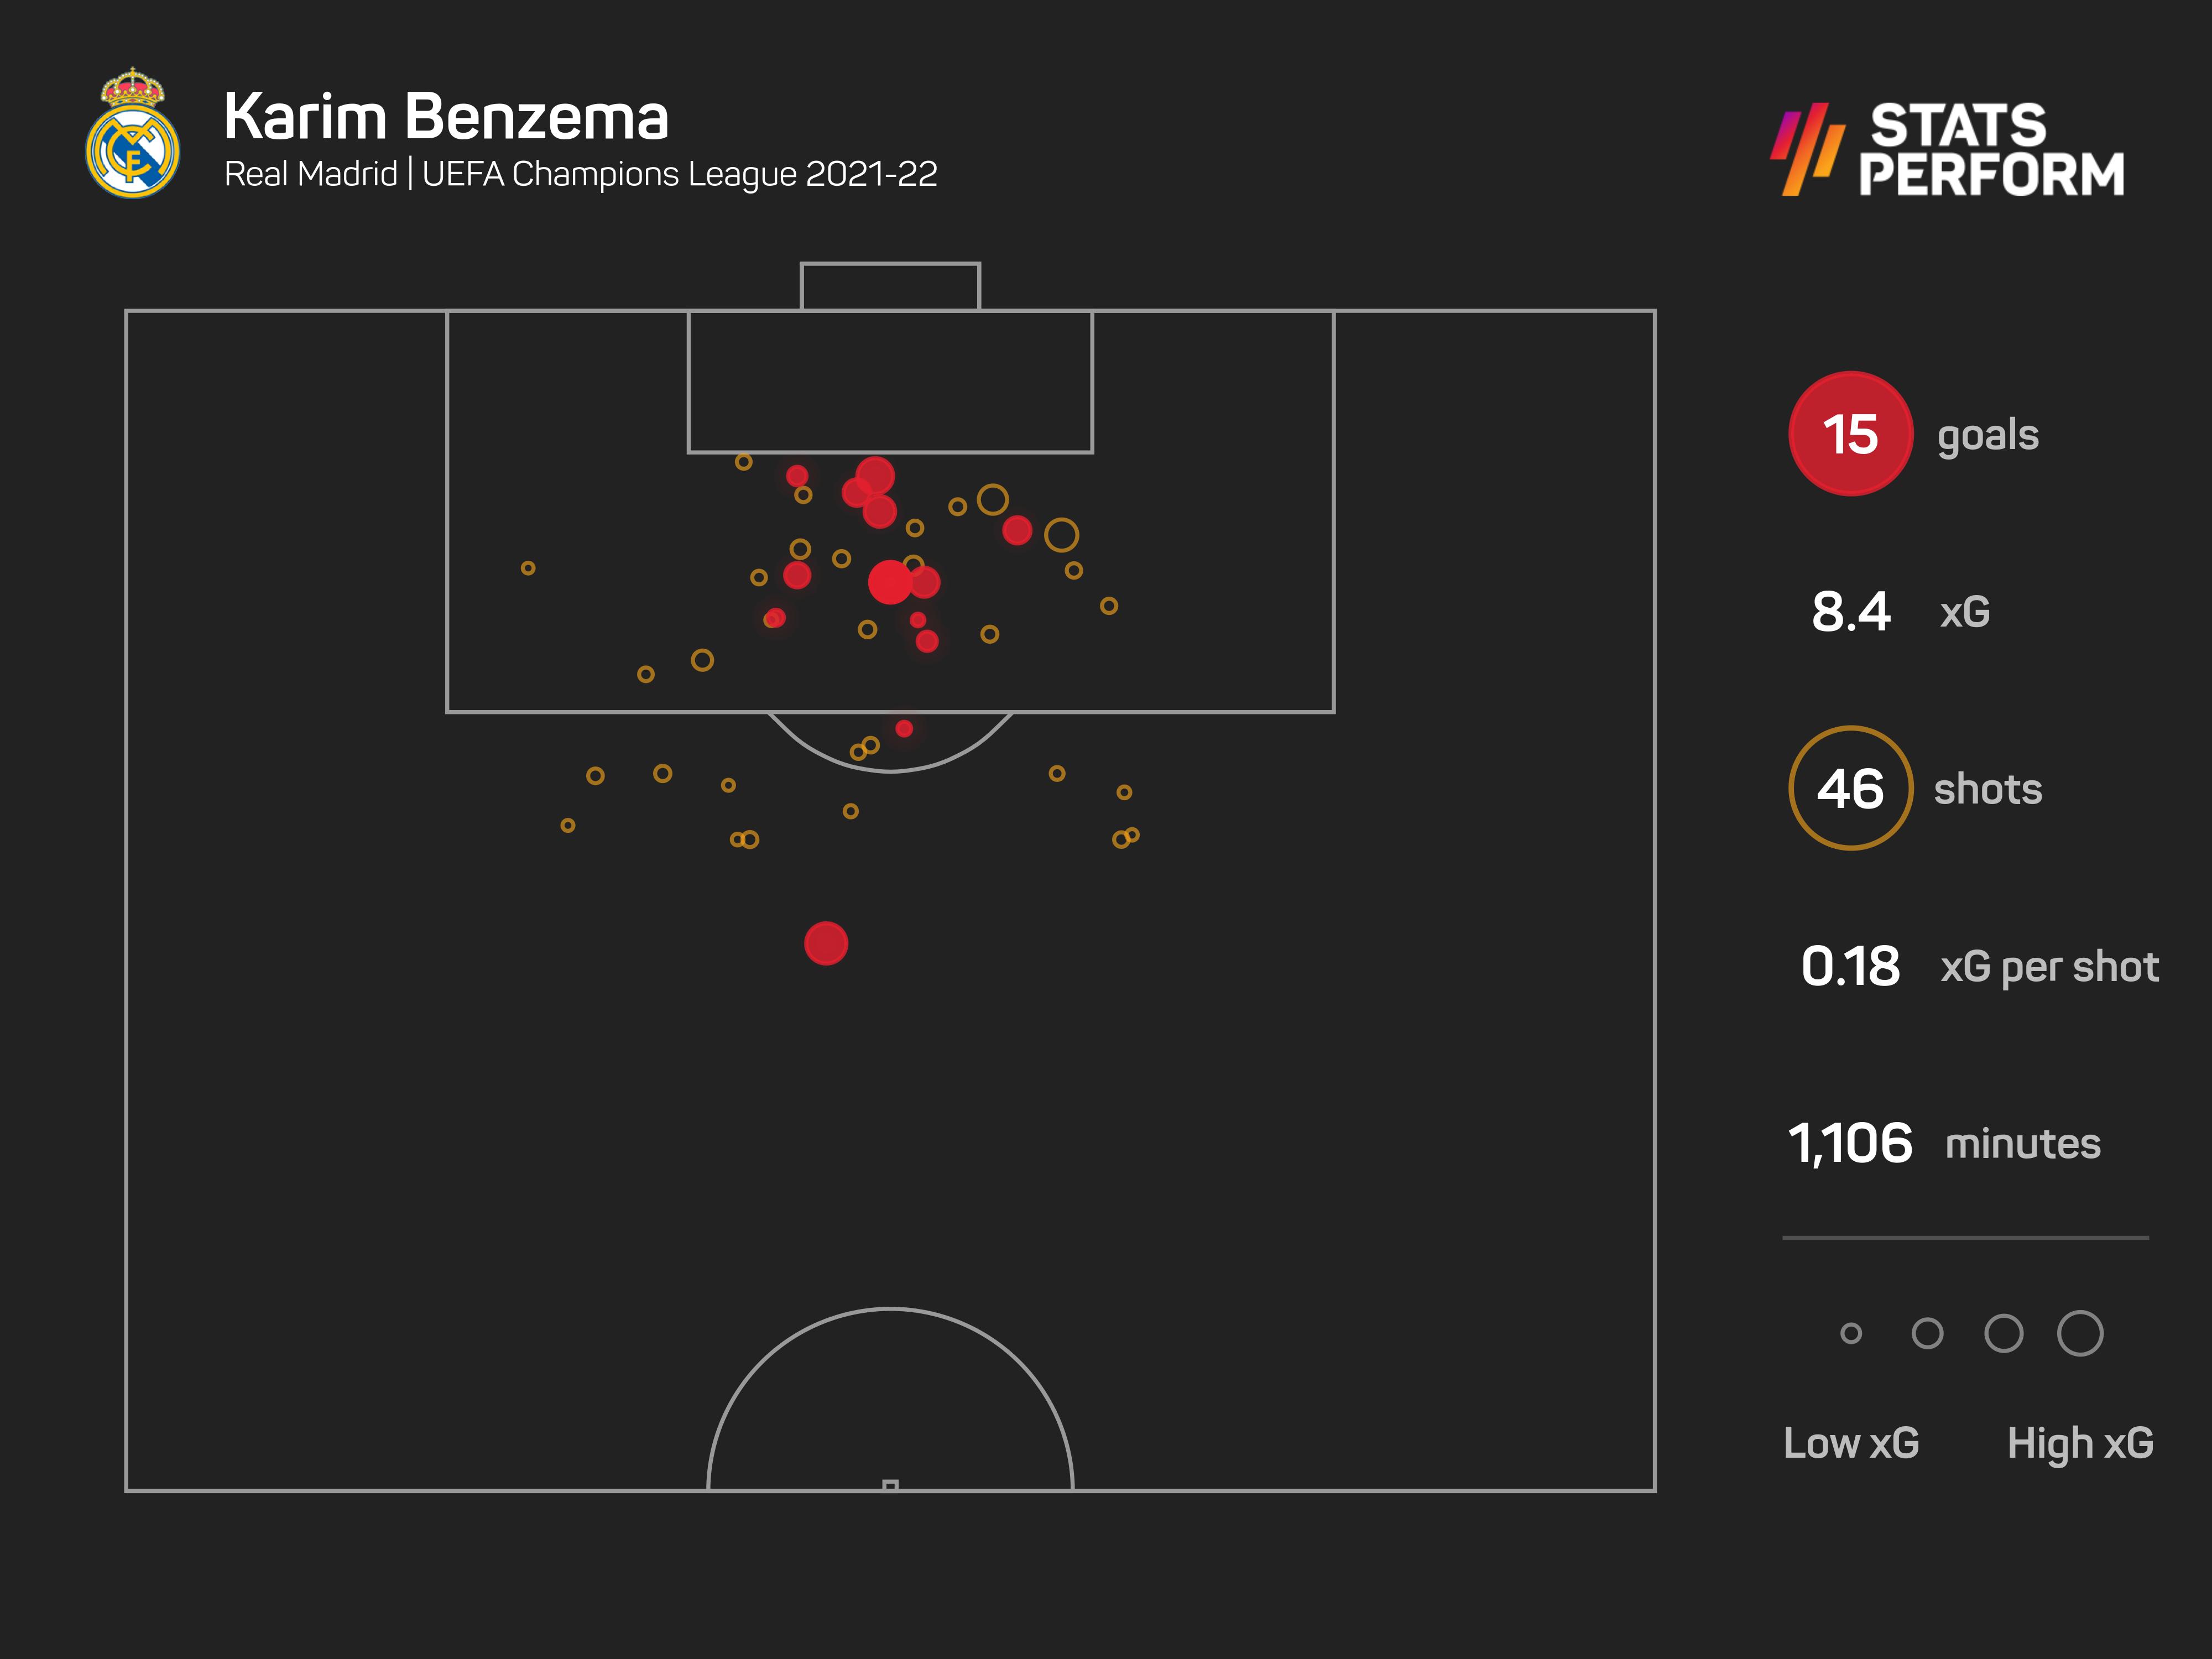 Karim Benzema was in stunning form in Europe last season